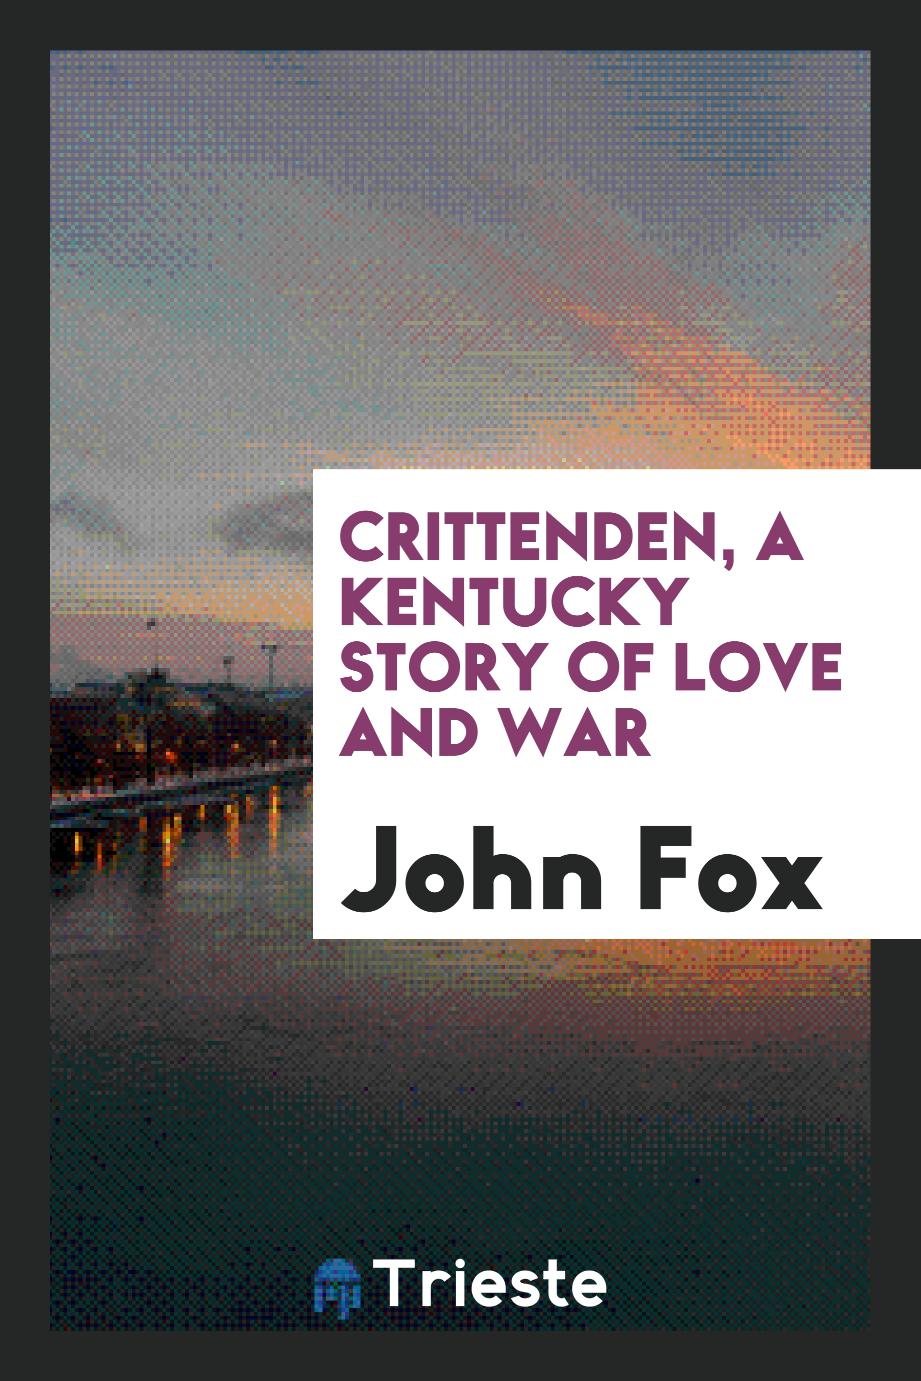 Crittenden, a Kentucky story of love and war